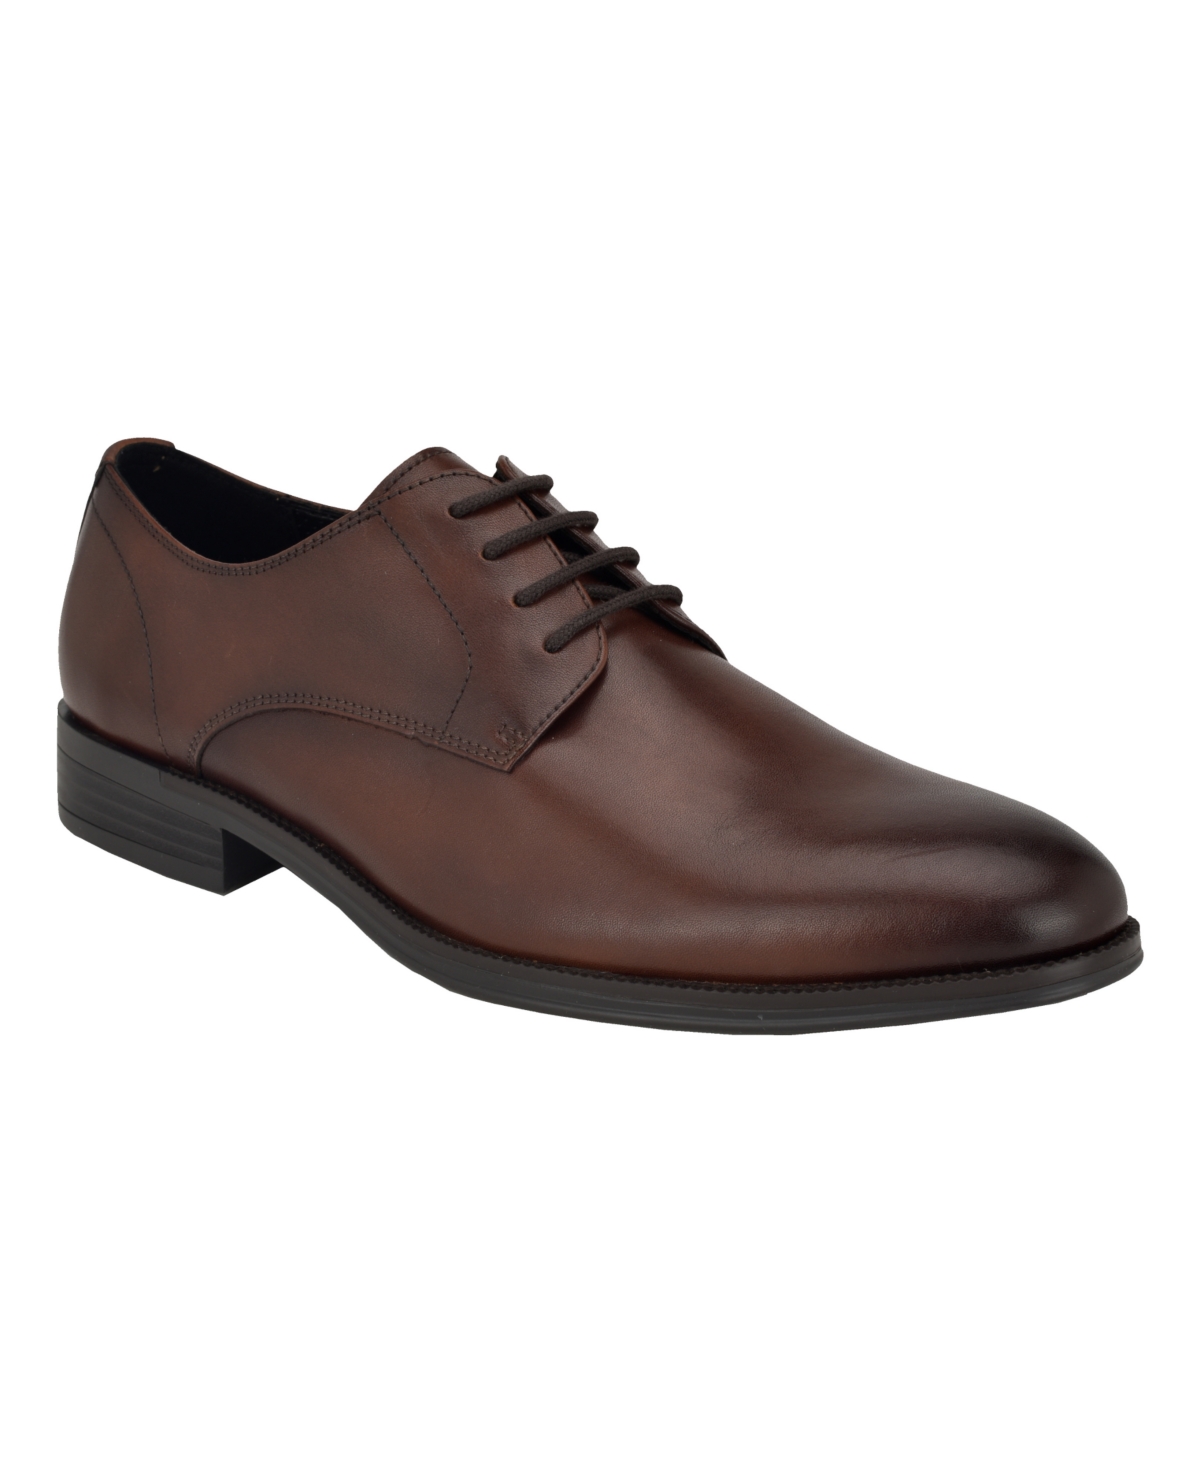 Men's Jack Lace Up Dress Loafers - Cognac Leather